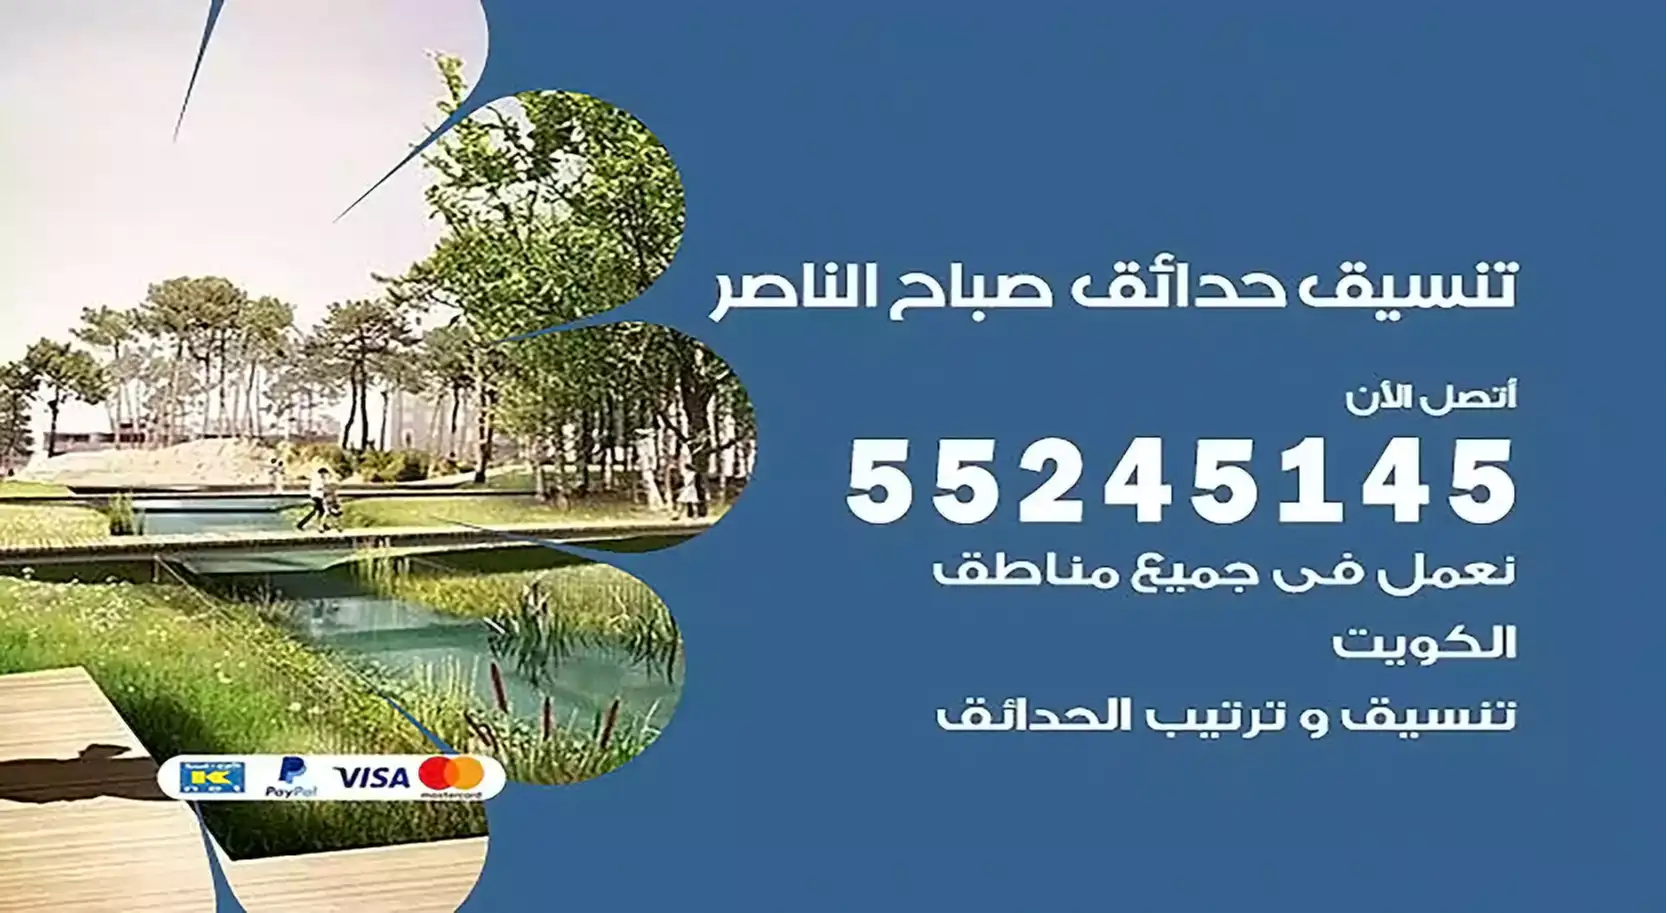 تنسيق حدائق صباح الناصر 55245145 تصميم و تنسيق حدائق منزلية